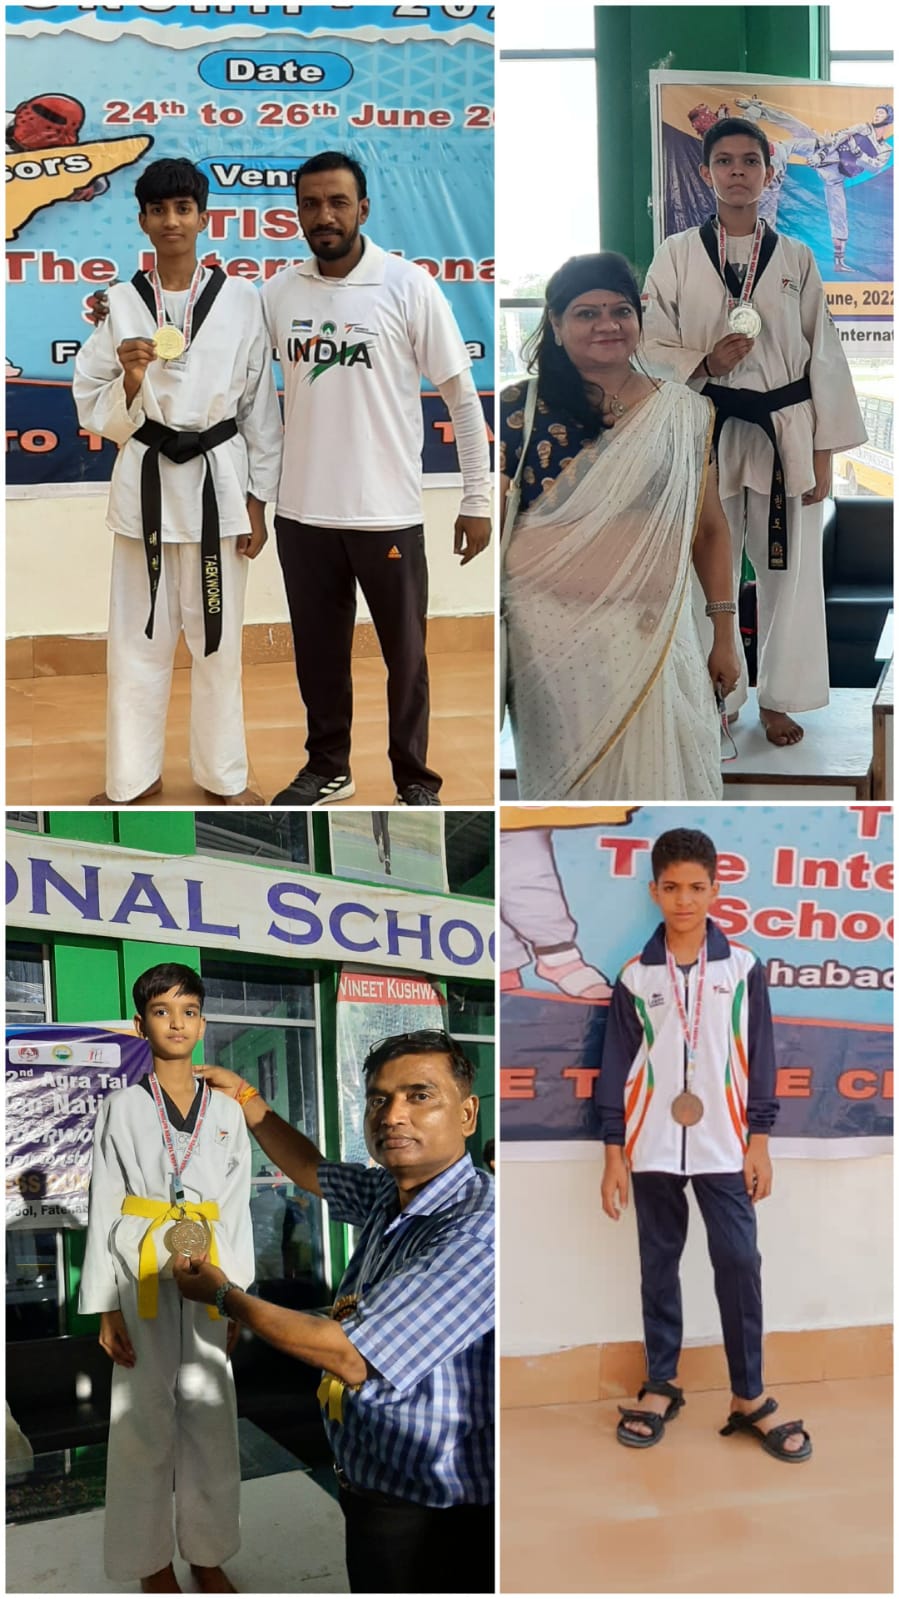 दीक्षा राइजिंग स्टार्स पब्लिक स्कूल के खिलाडियो ने राष्ट्रीय प्रतियोगिता मे स्वर्ण,रजत और कांस्य पदक जीतकर लहराया परचम